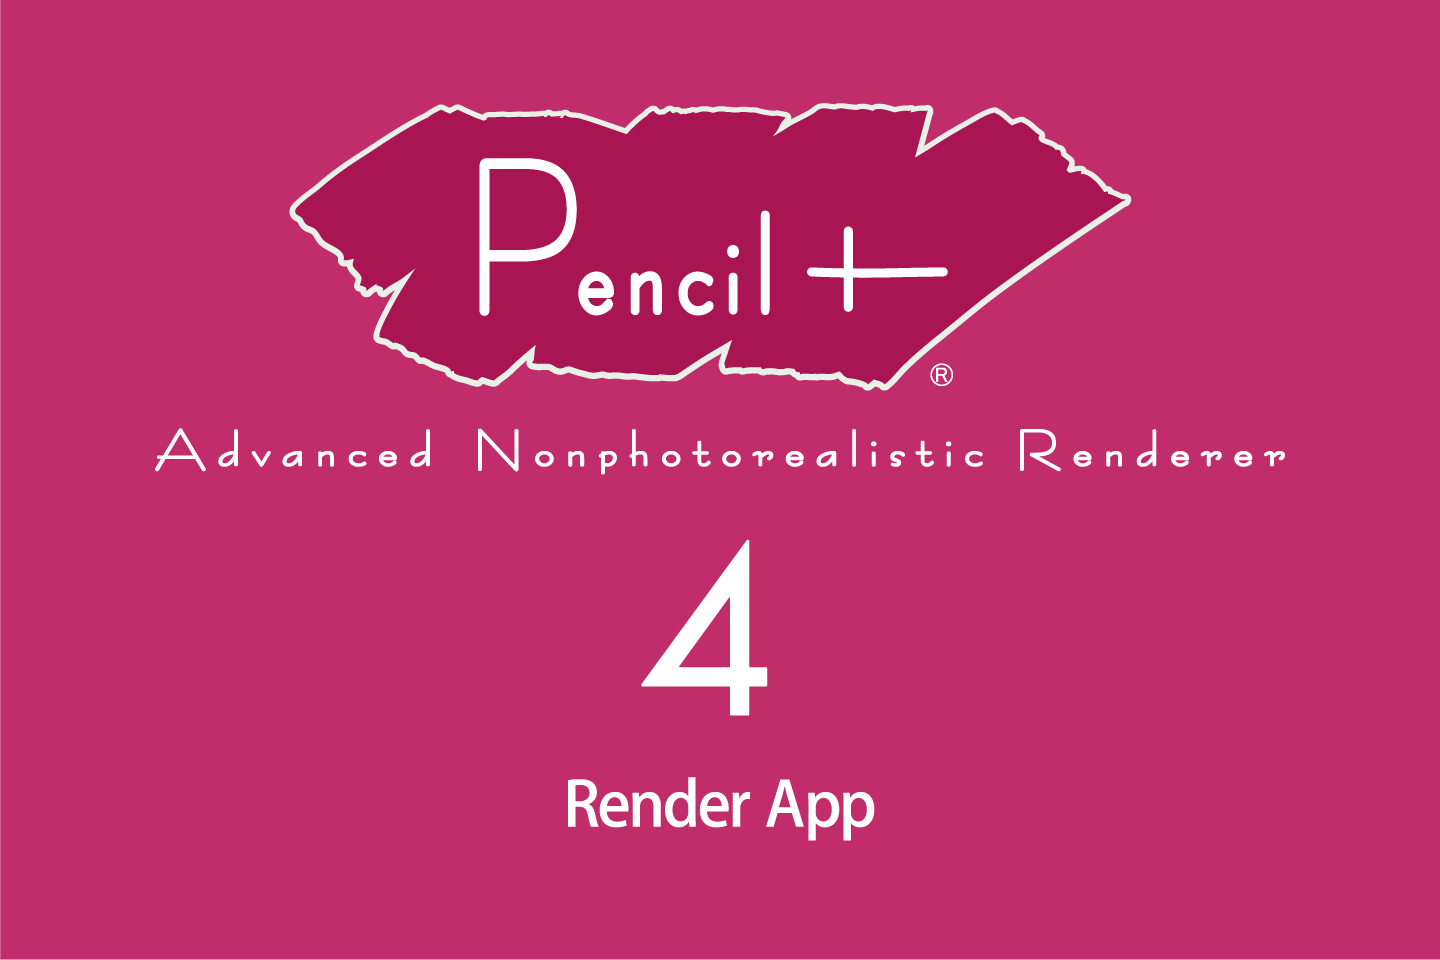 Pencil+ 4 Render App